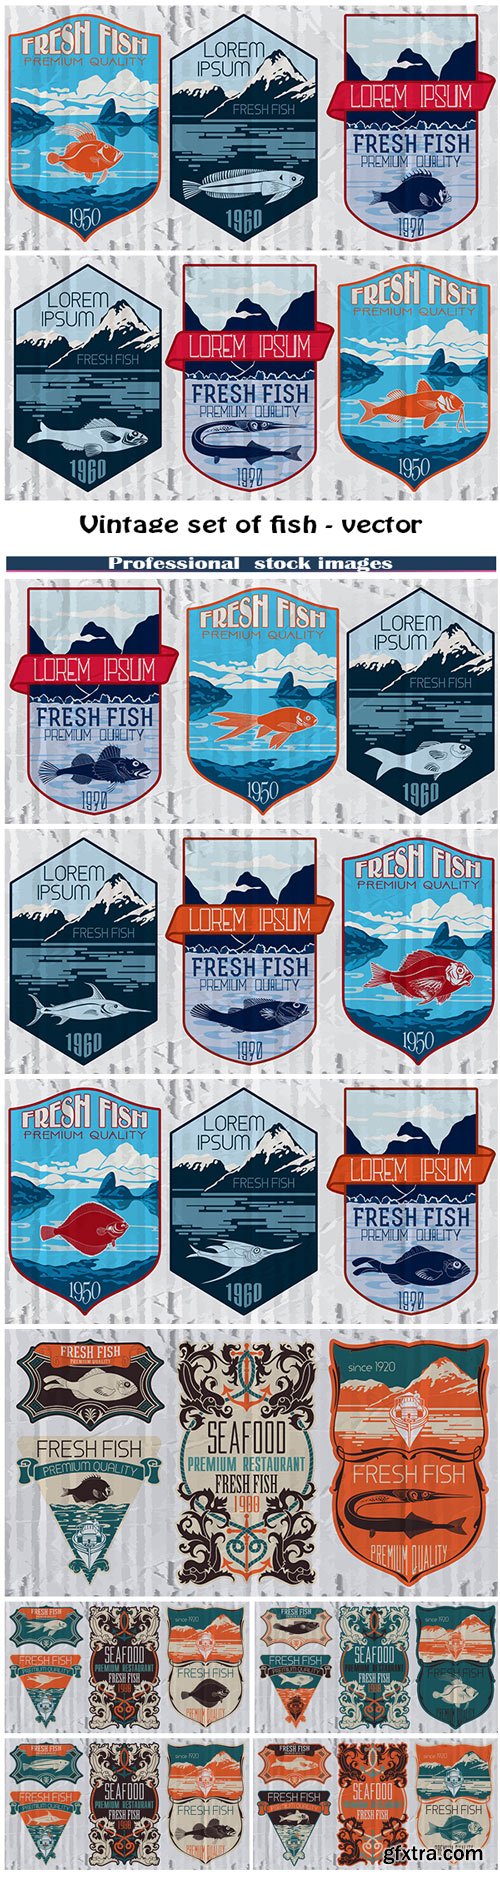 Vintage set of fish - vector. Logo, badge or label design template